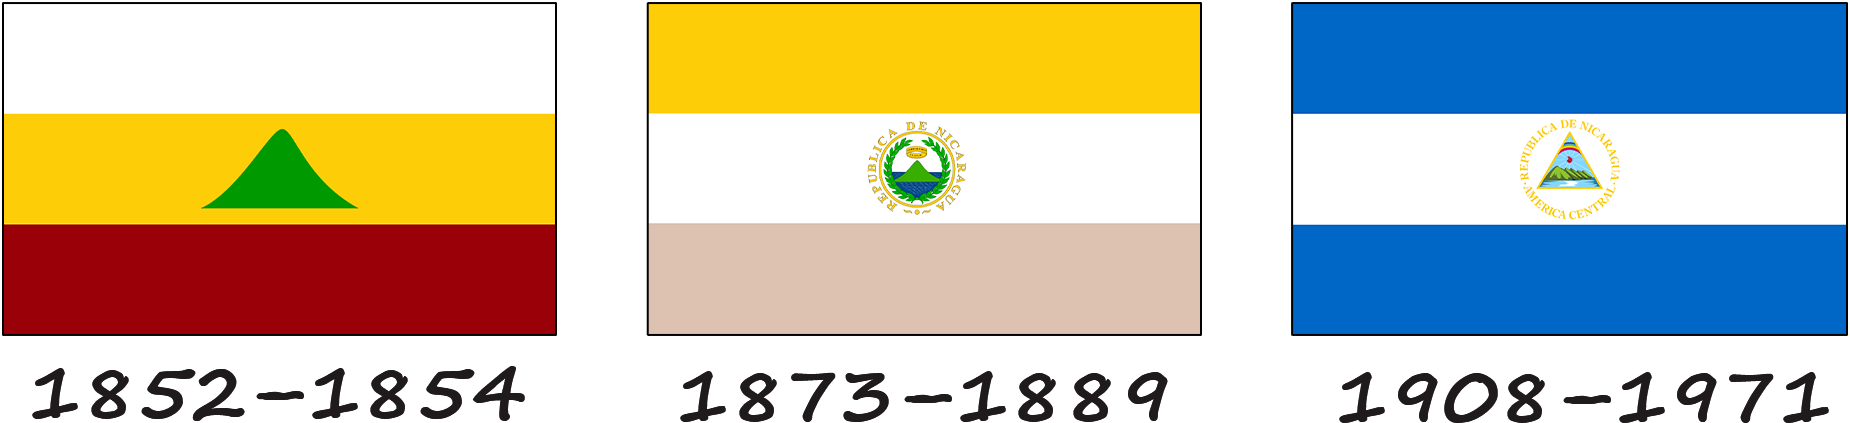 Histoire du drapeau nicaraguayen